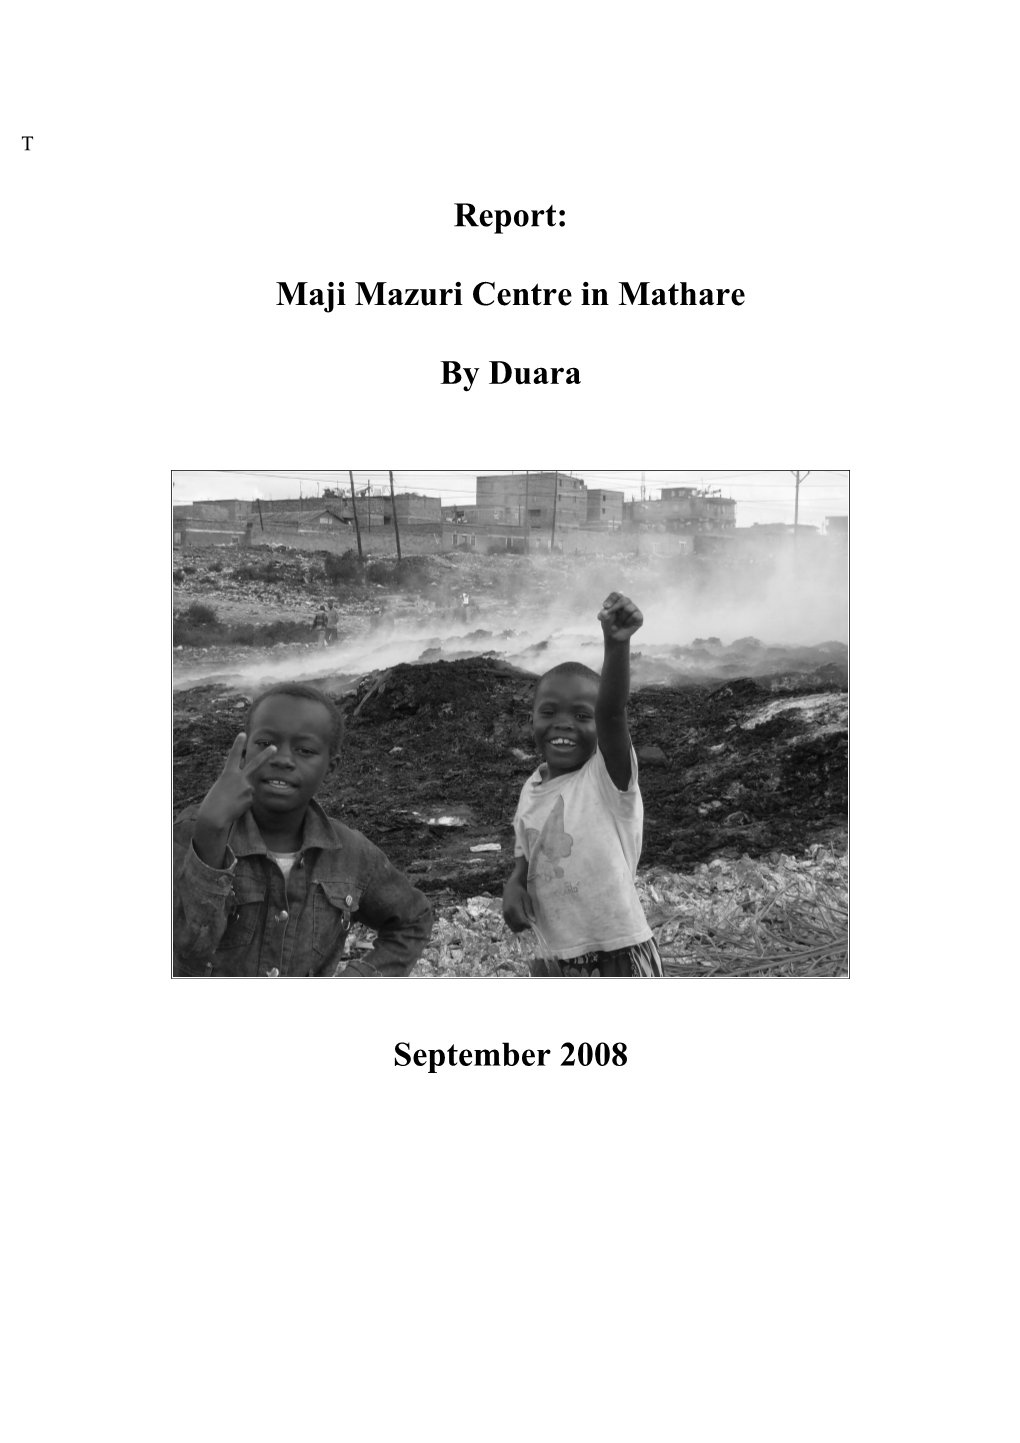 Maji Mazuri Centre in Mathare